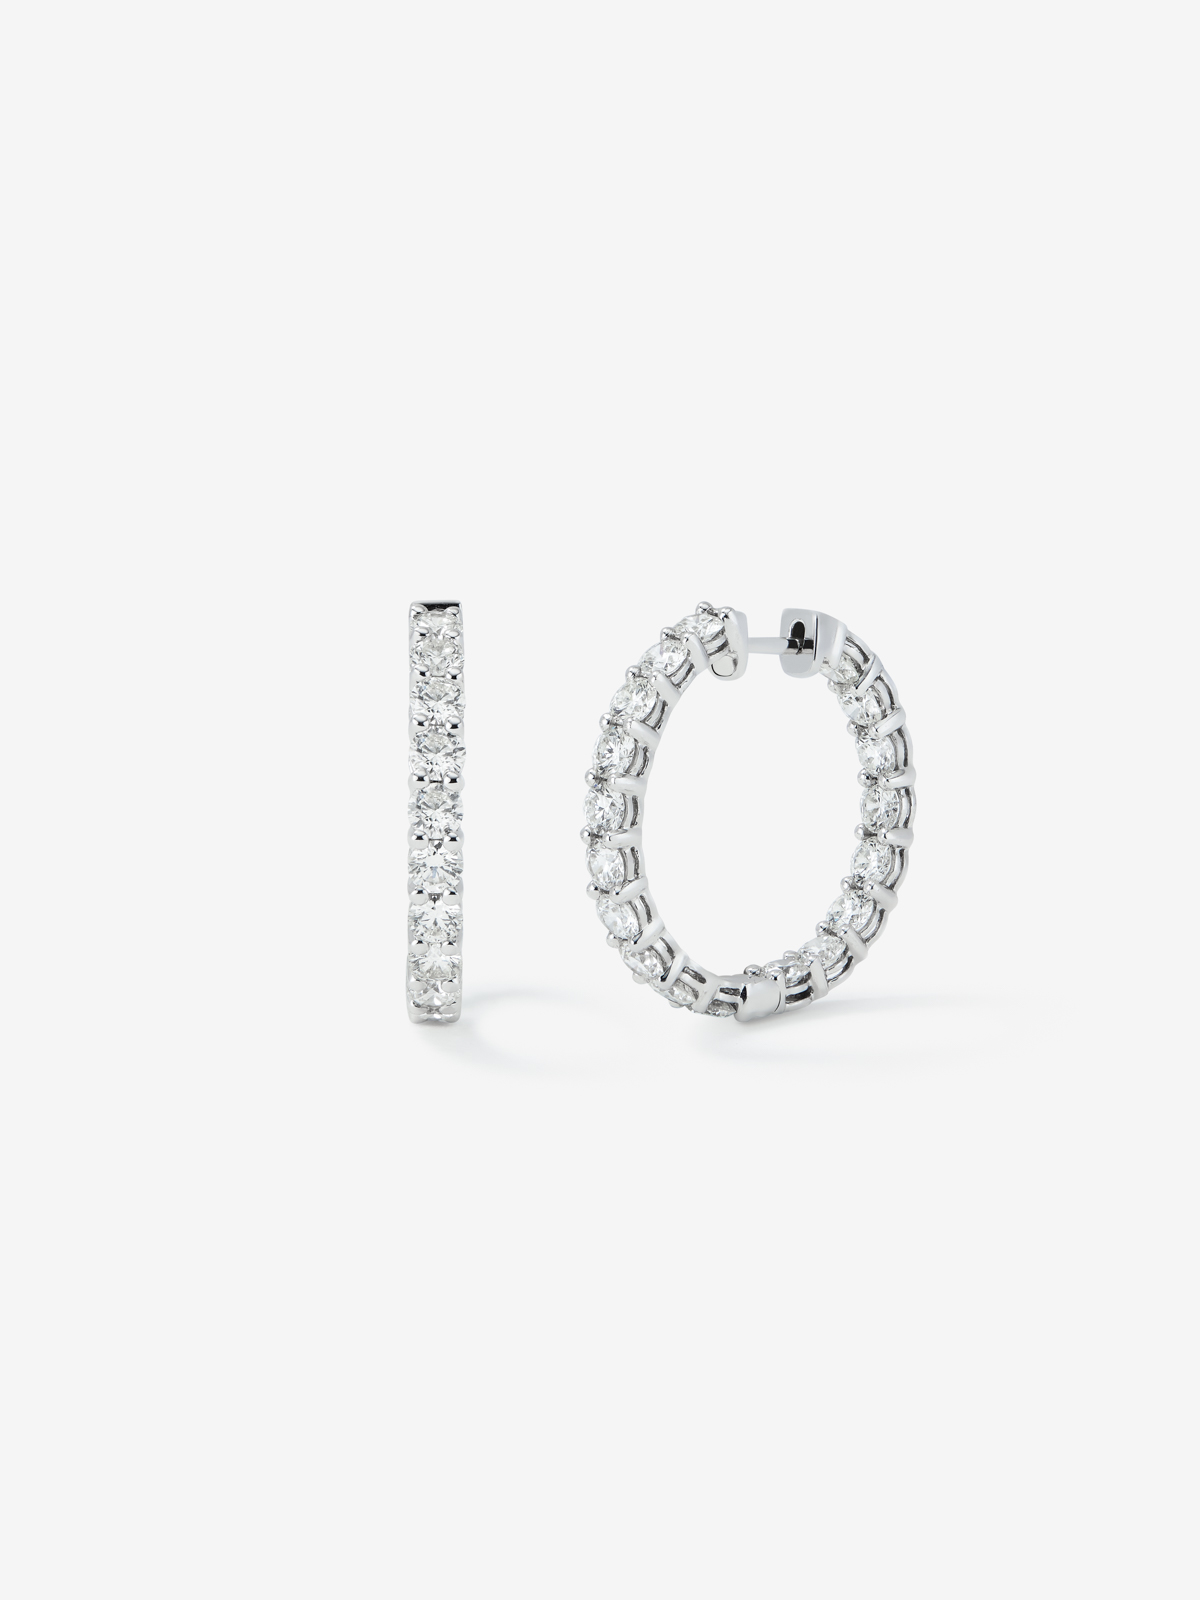 Pendientes de aro de oro blanco de 18K con diamantes blancos en talla brillante de 4,7 cts